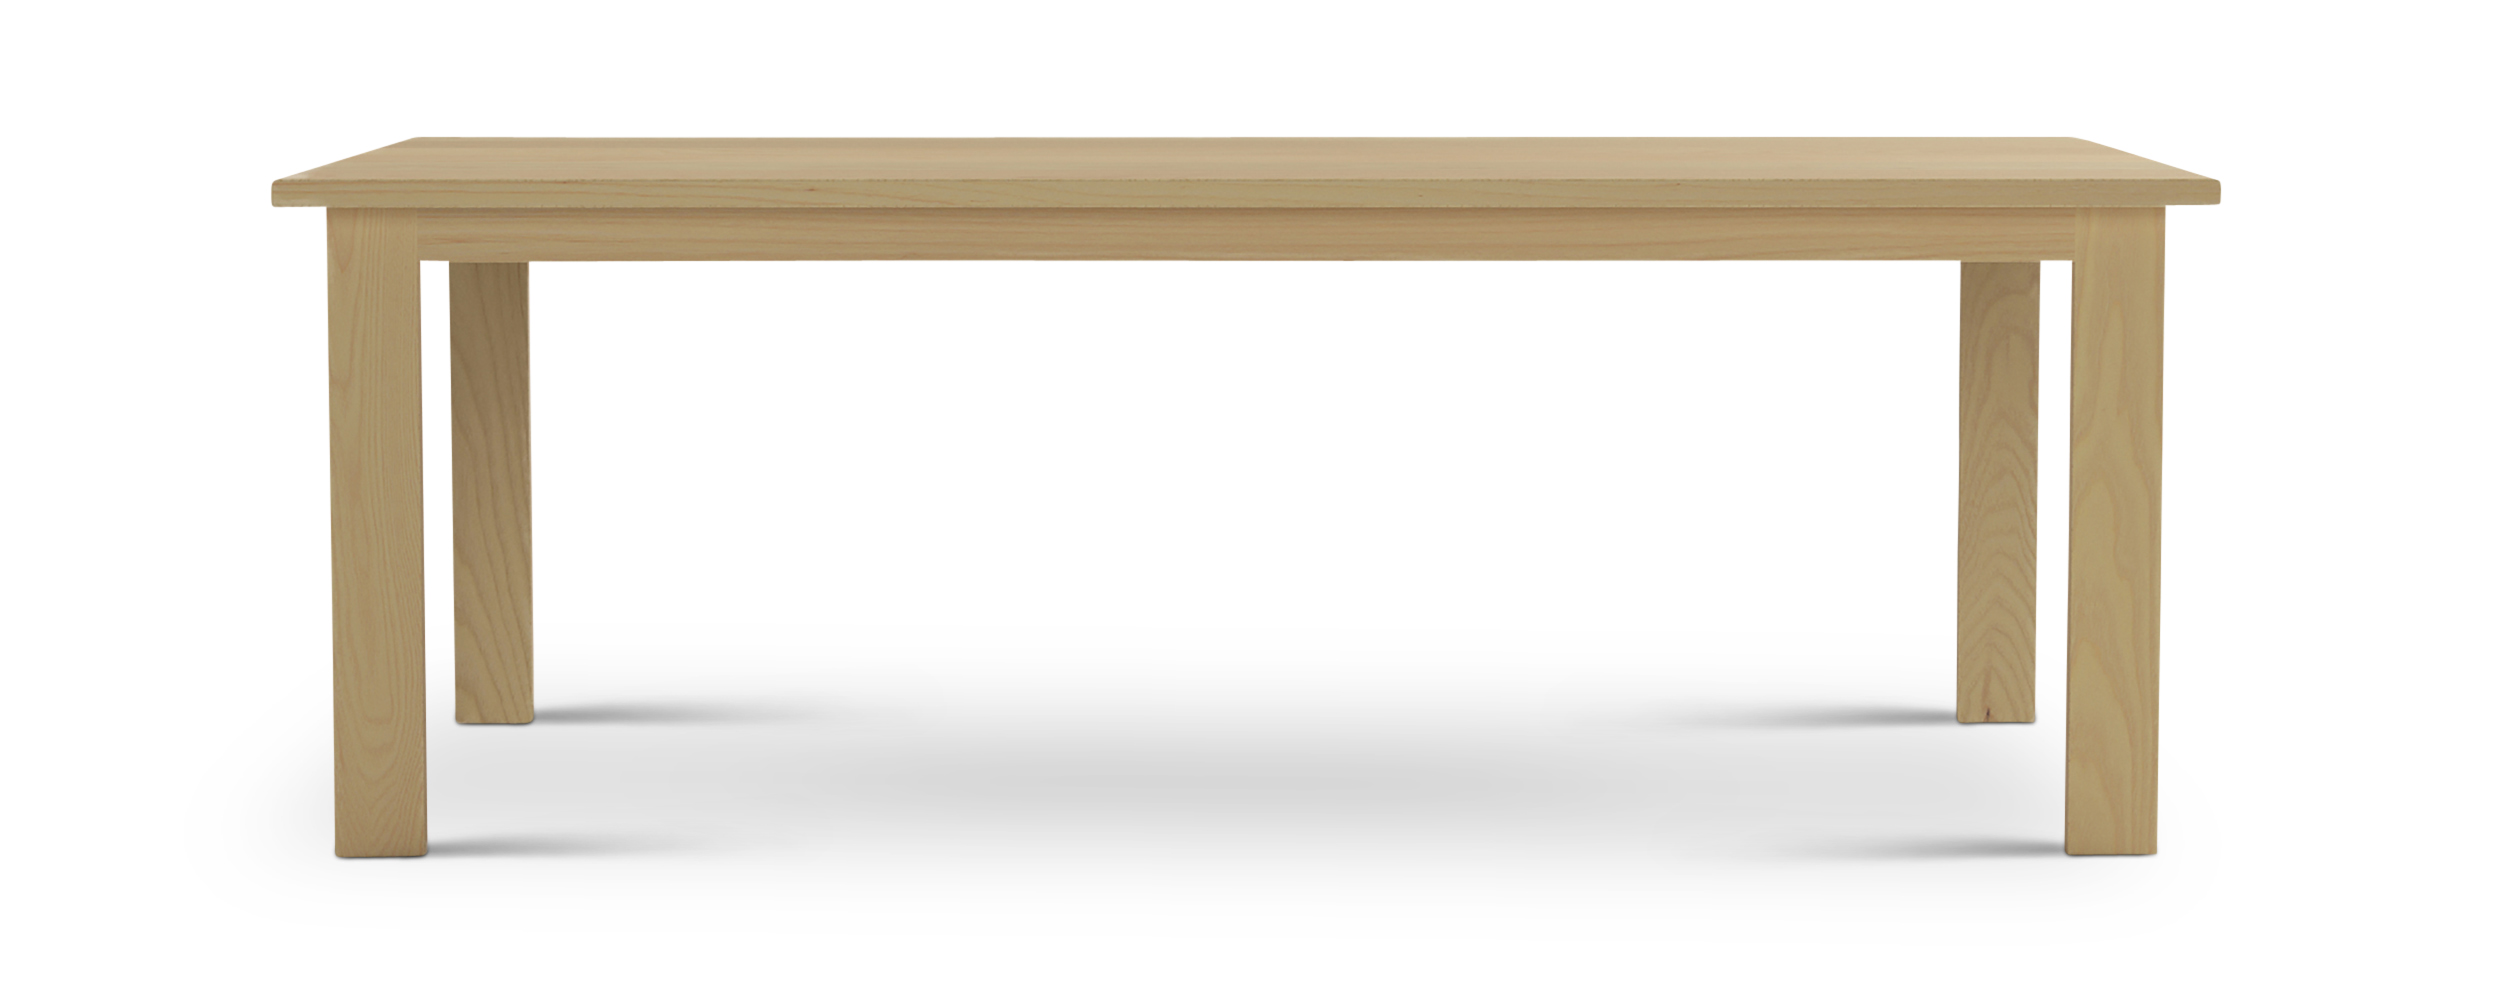 Series 424 Thin rectangular wooden legs modern table 84" long